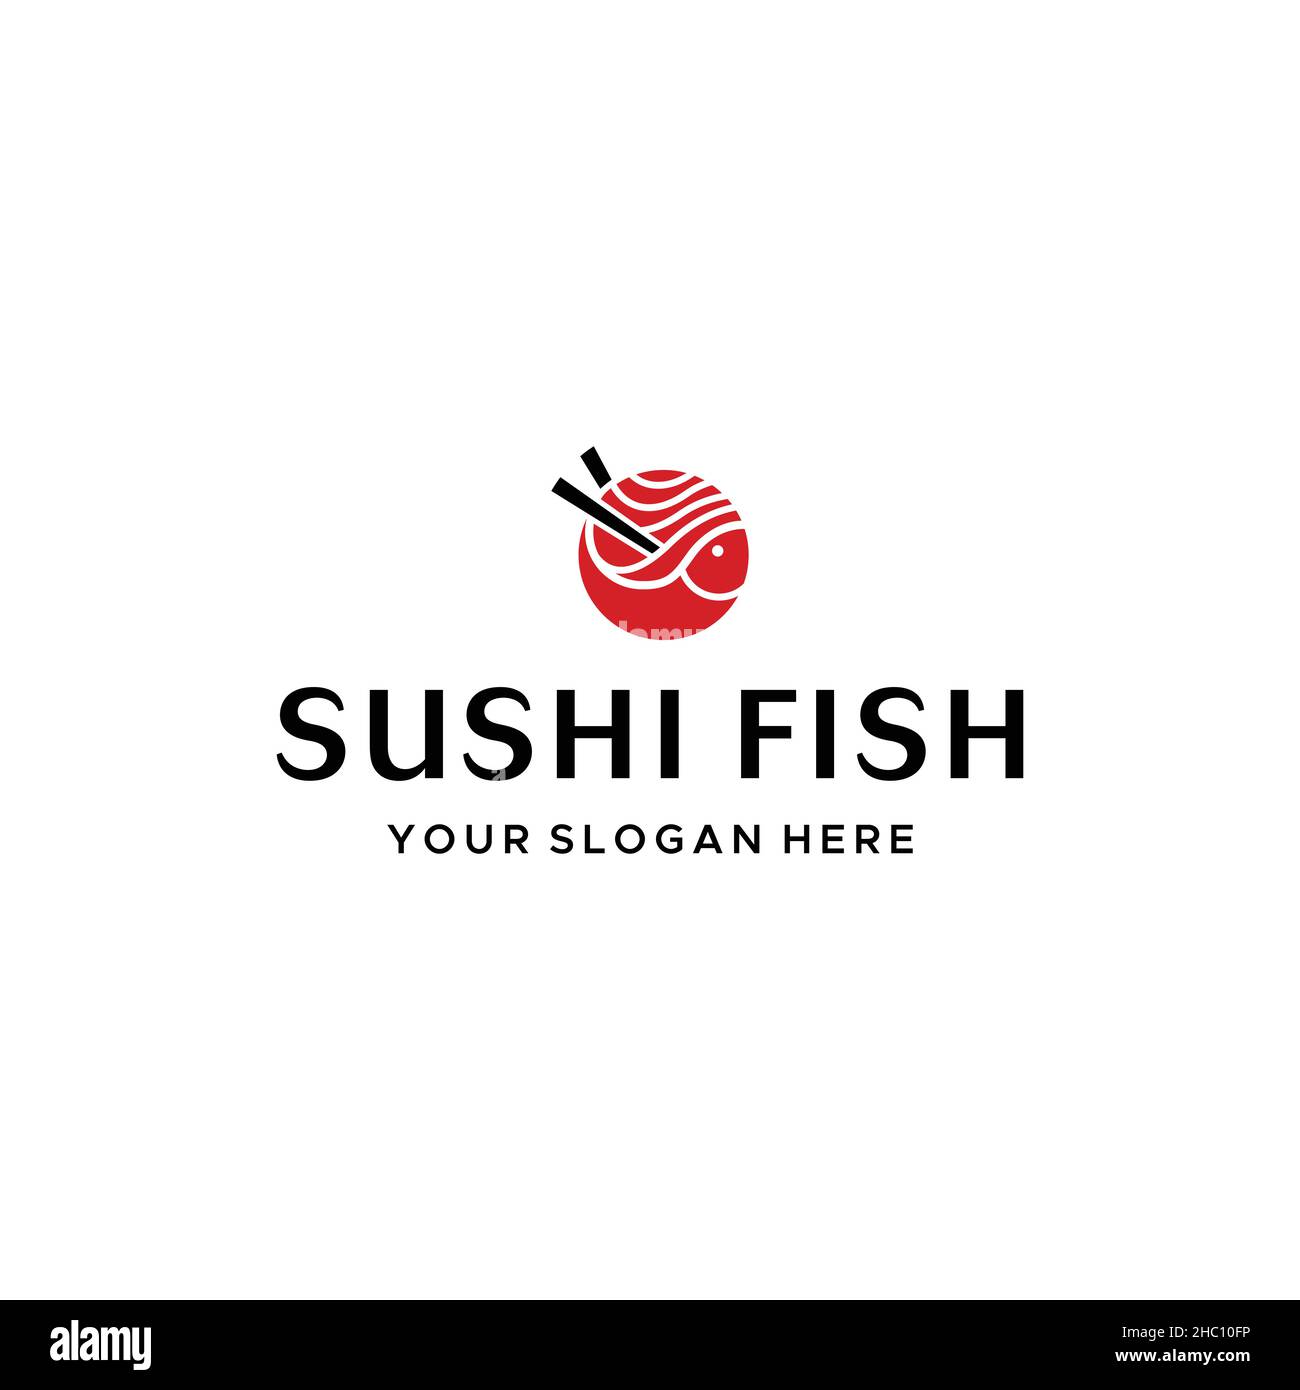 Design moderne et plat avec logo SUHI FISH Salmon Illustration de Vecteur